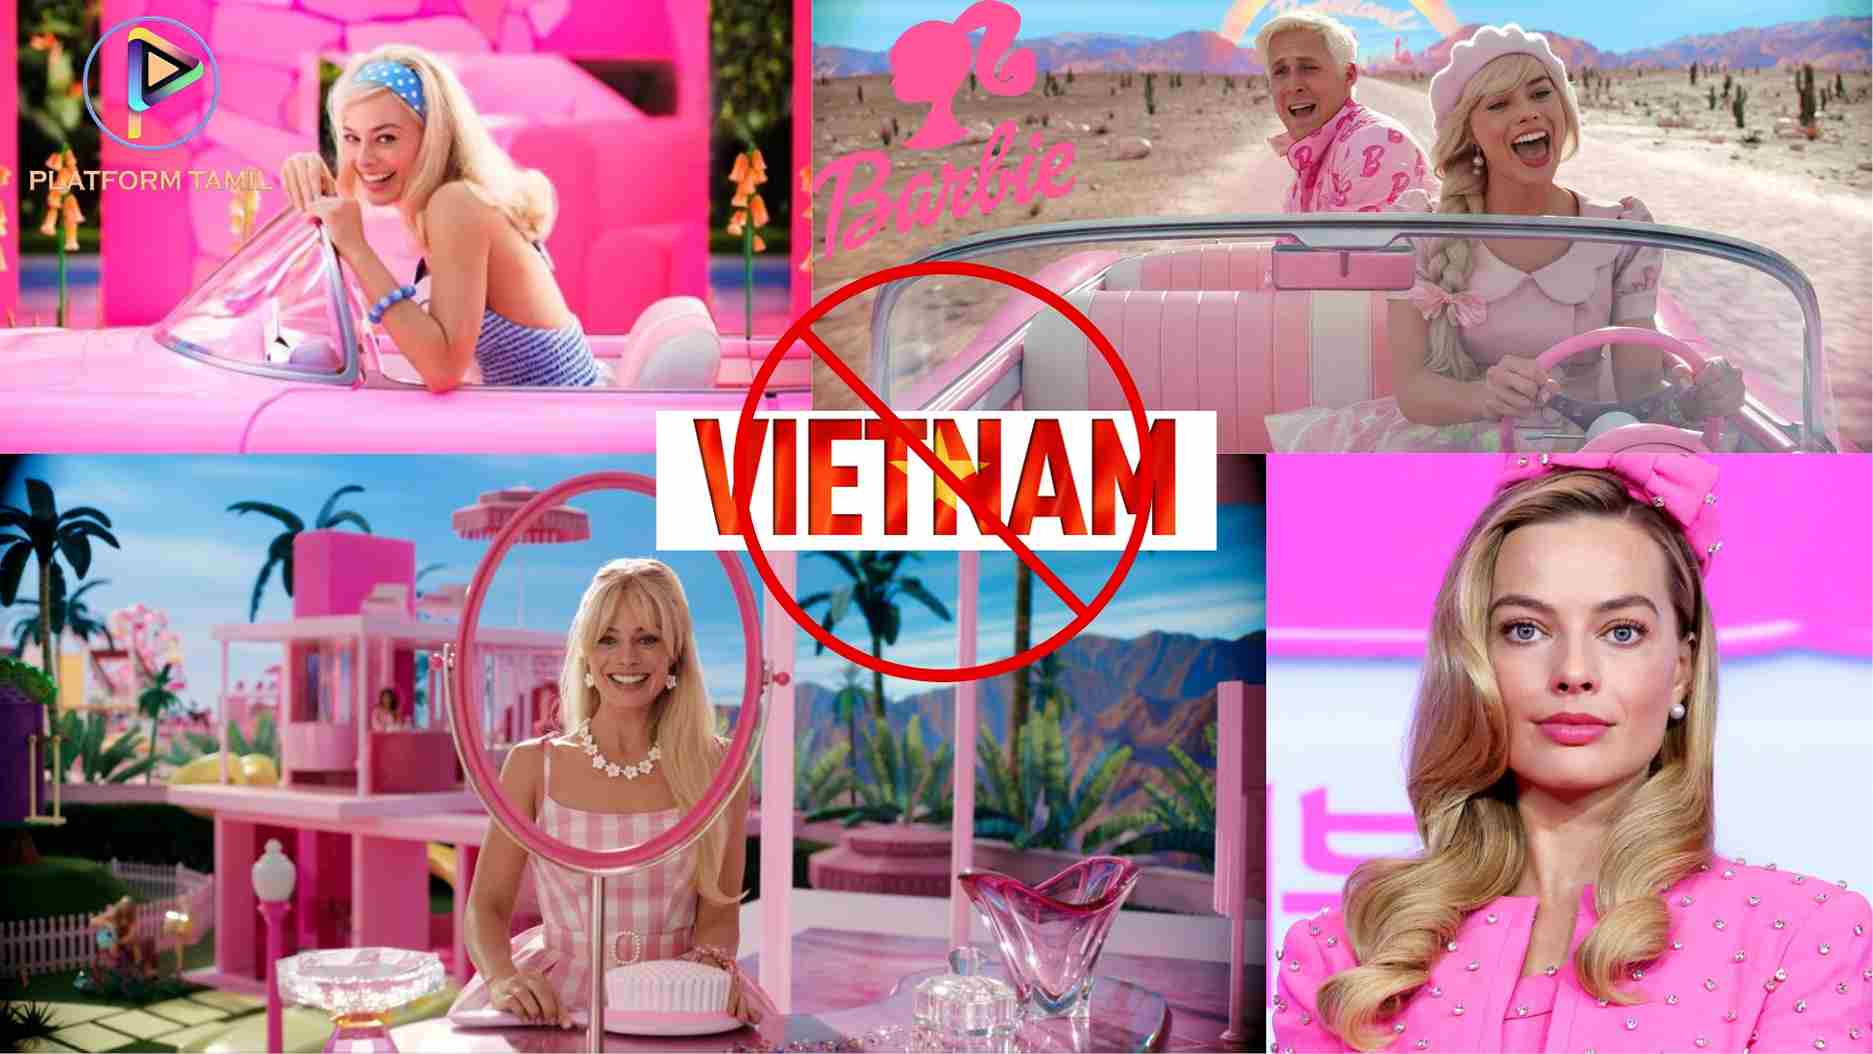 Barbie Movie Banned in Vietnam - Platform Tamil